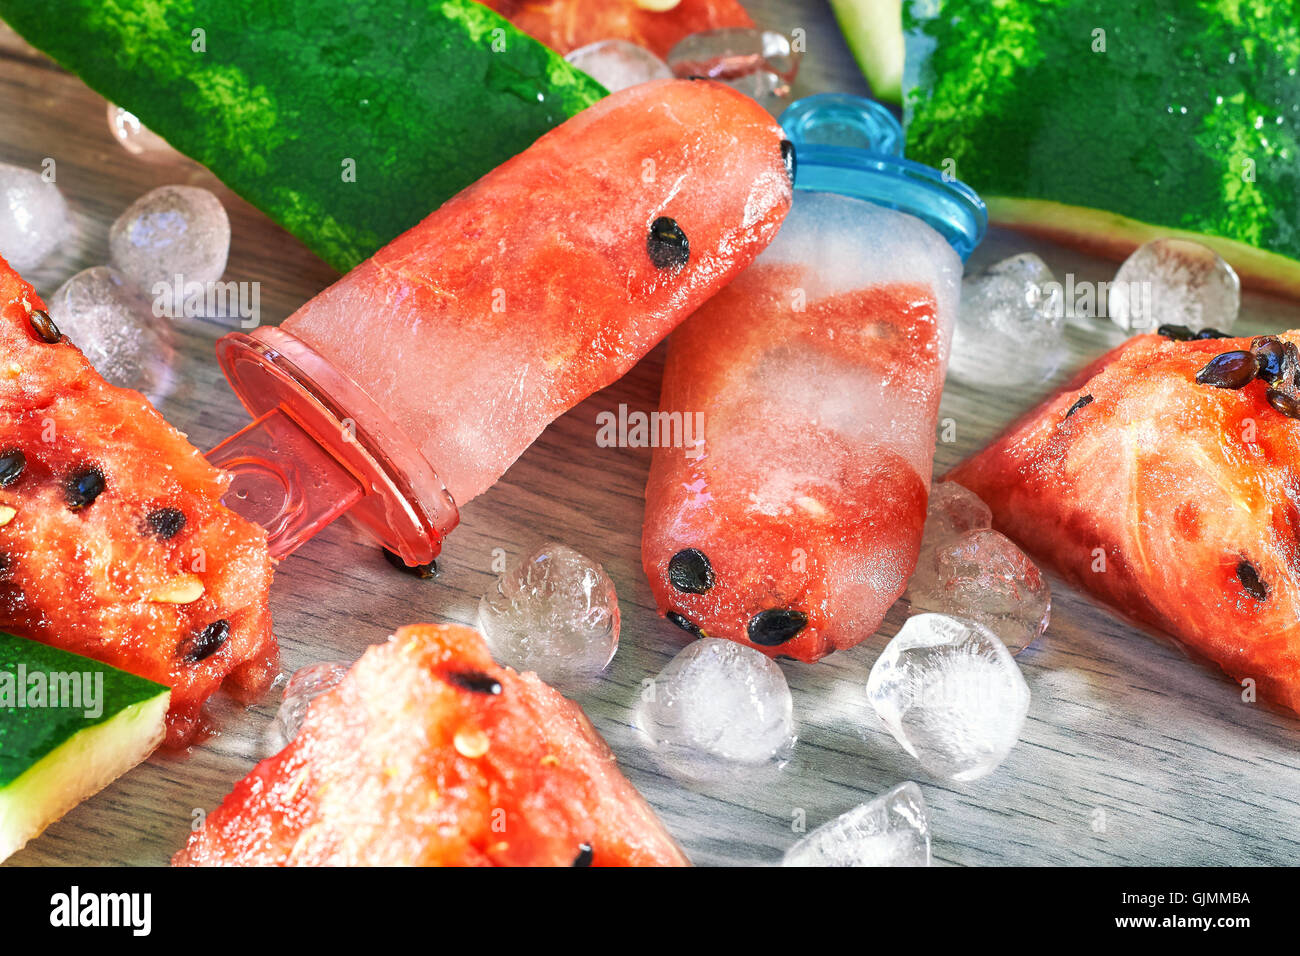 Gefrorene Wassermelone Eis am Stiel mit Eiswürfeln und Wassermelone Scheiben auf grauem Hintergrund aus Holz. Konzept-Bild für Sommer-Erfrischung Stockfoto